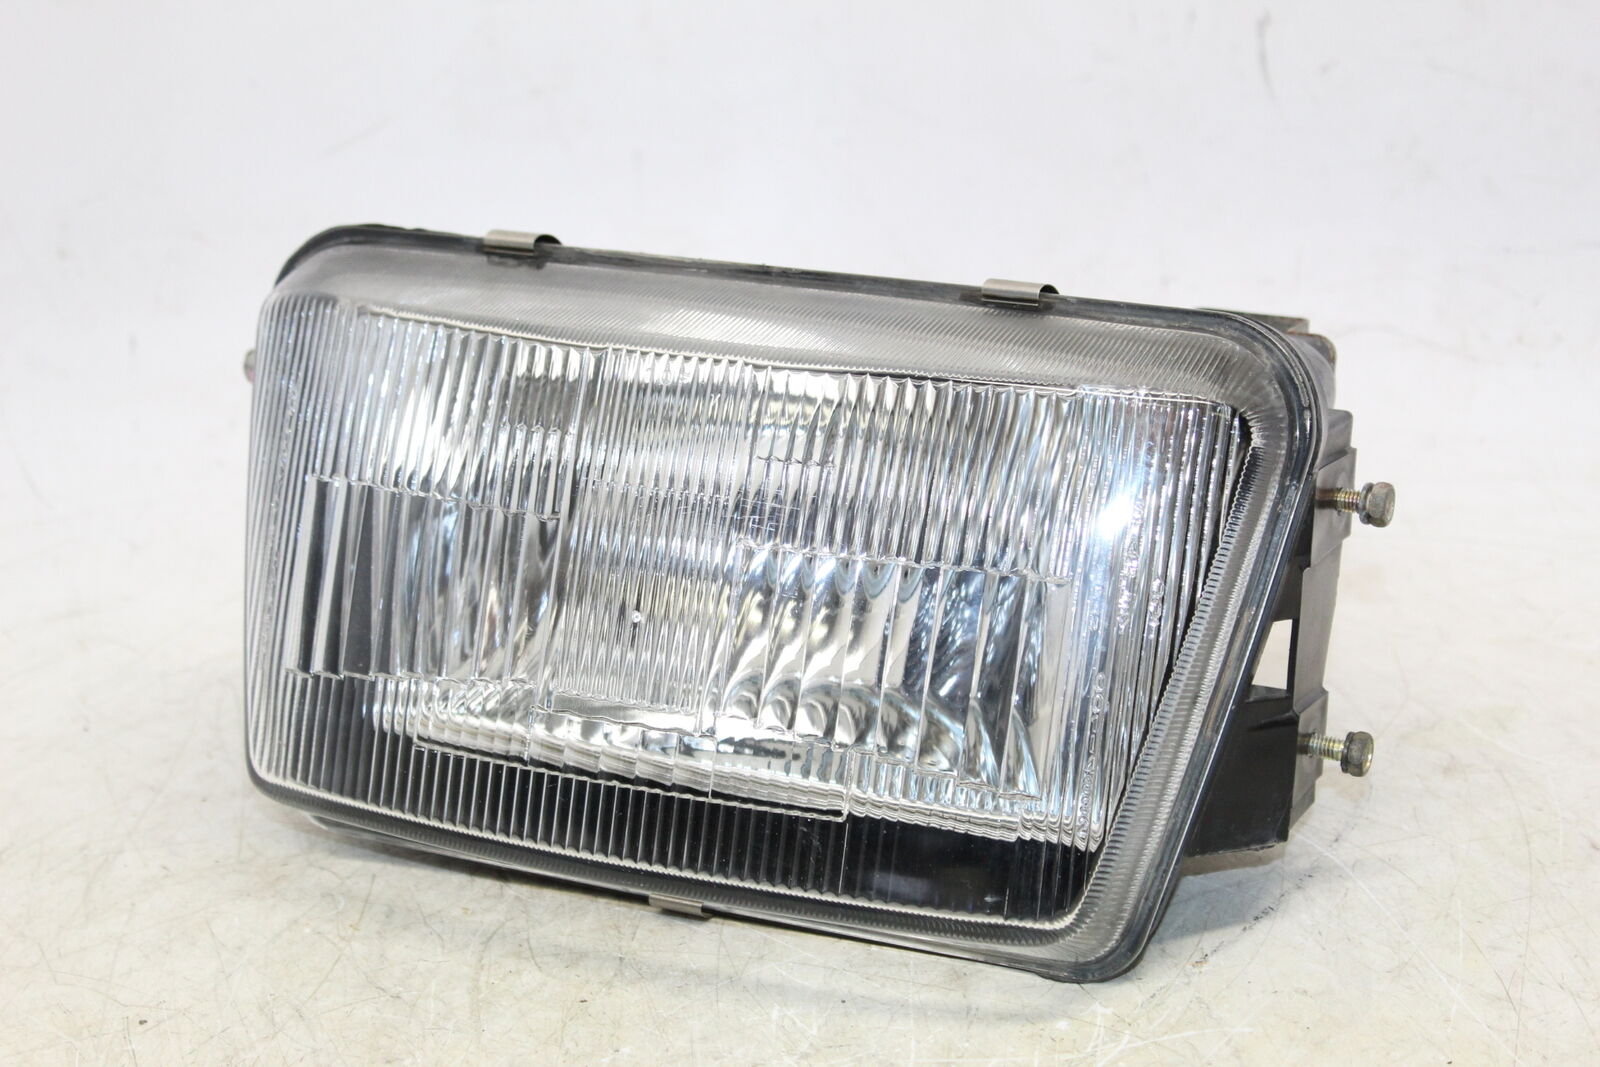 1985 Suzuki Gv1400gd Gv 1400 Front Head Light Headlight Lamp